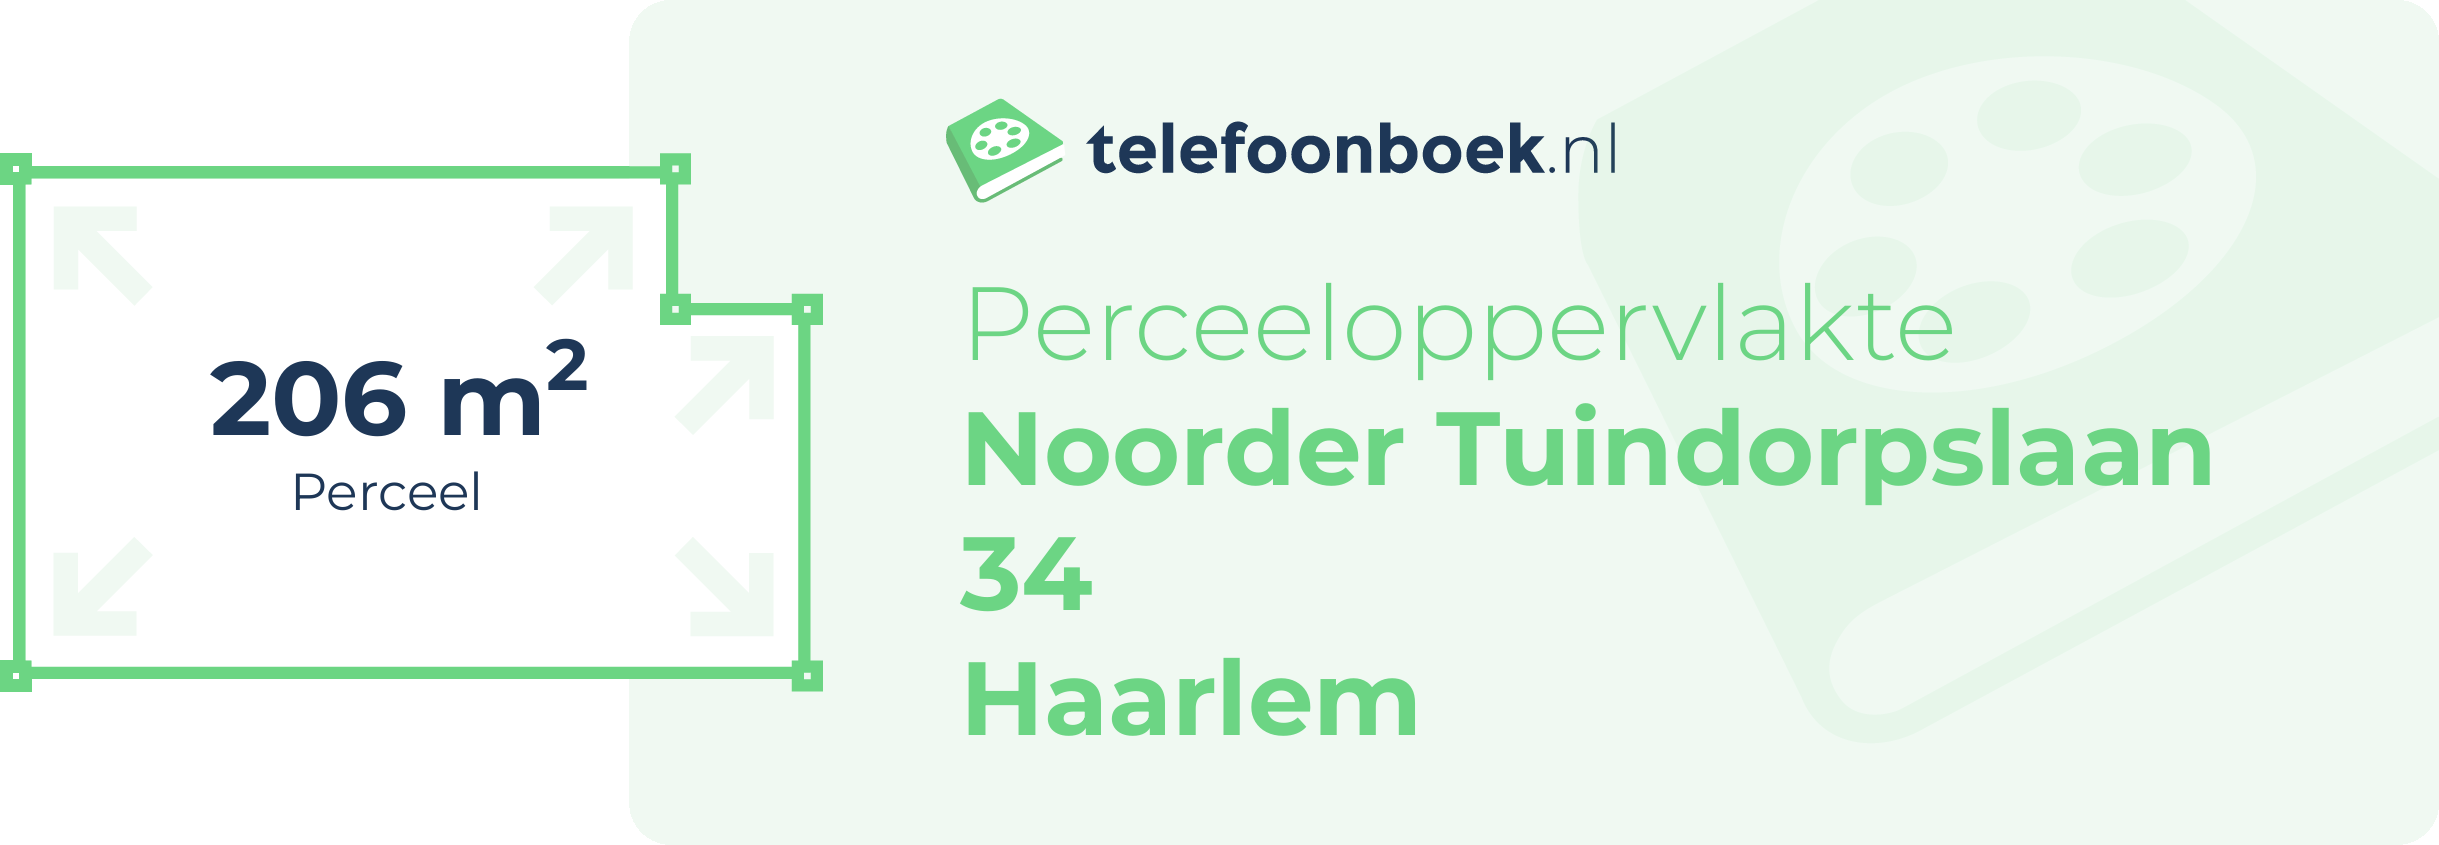 Perceeloppervlakte Noorder Tuindorpslaan 34 Haarlem